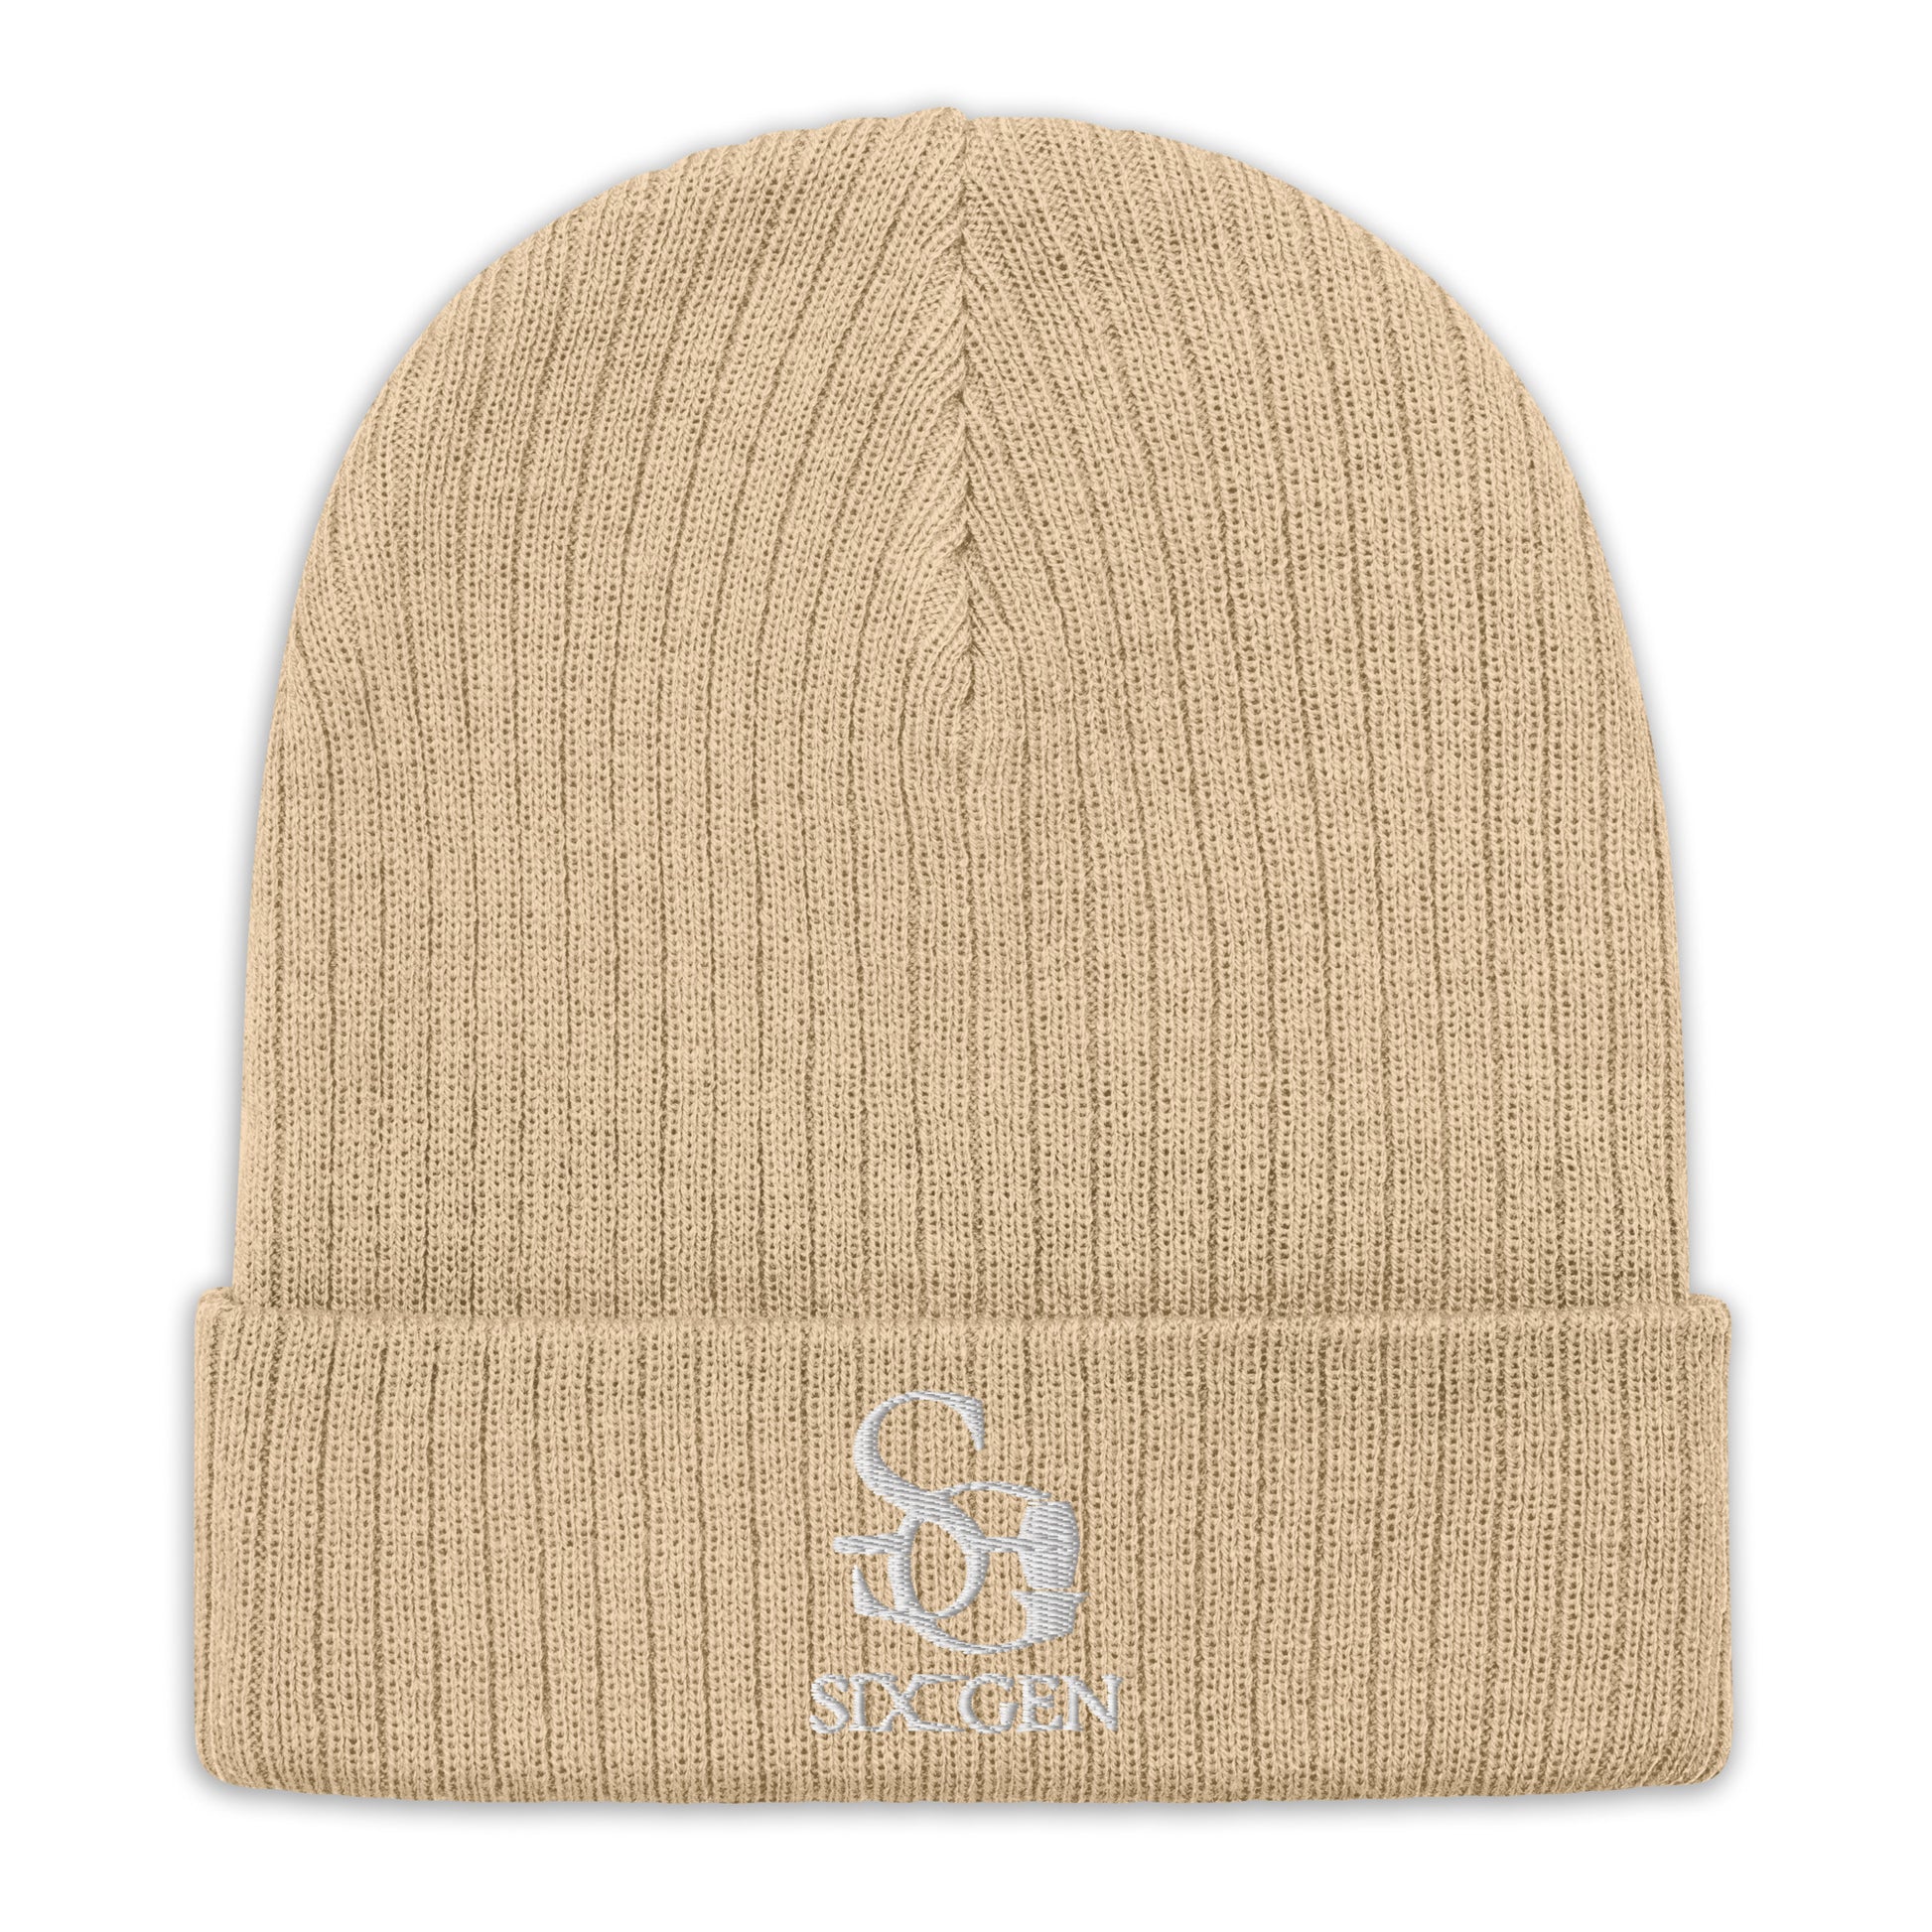 Six-Gen Logo Knitted Hat